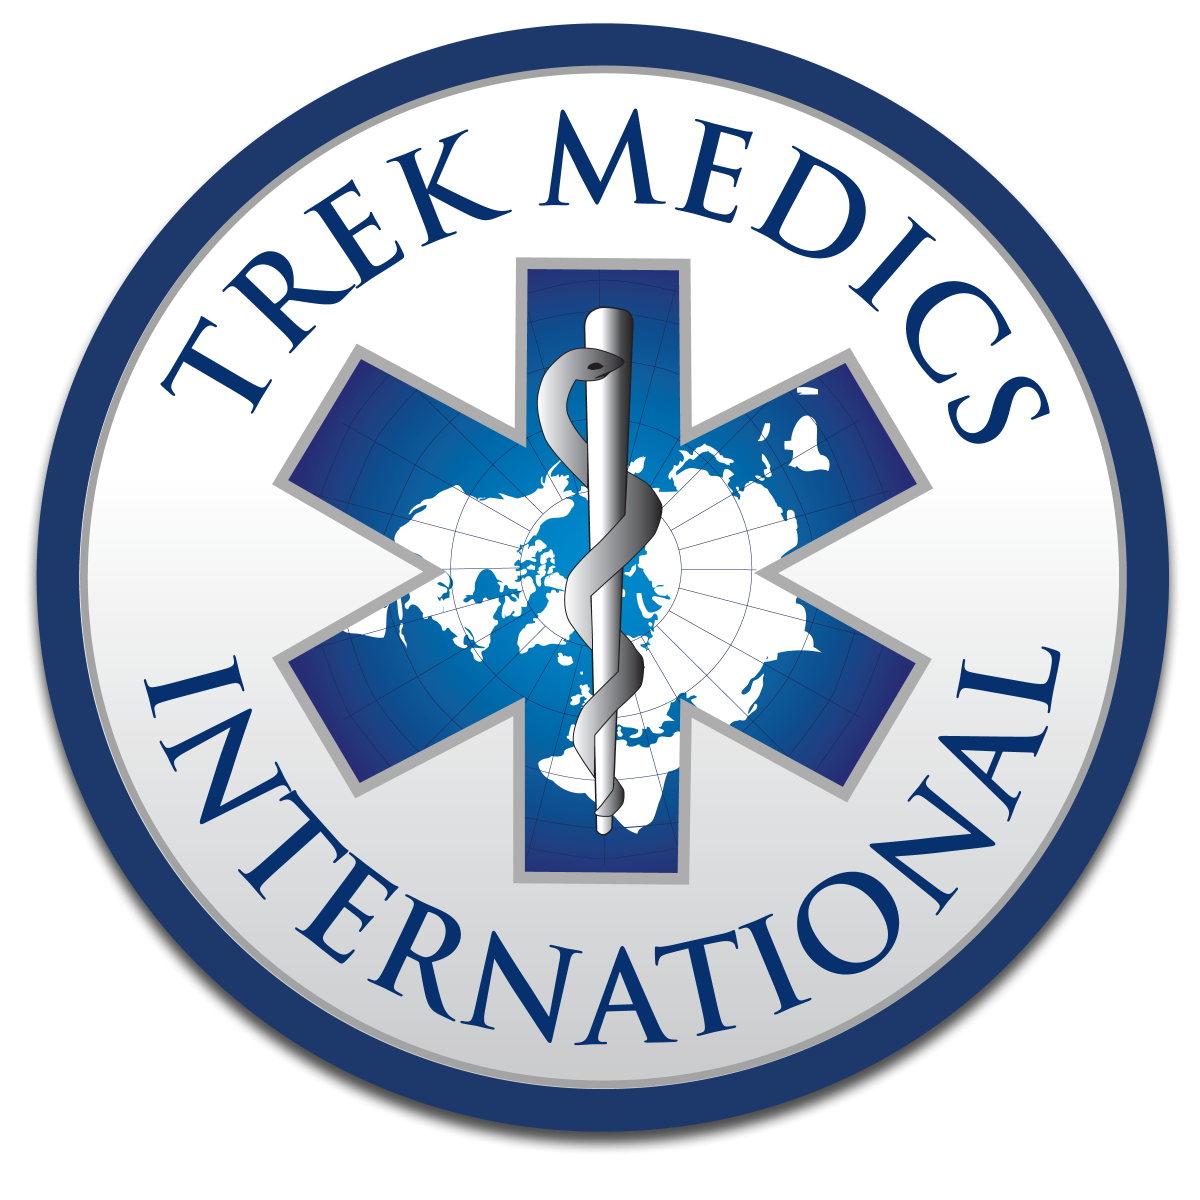 Trek Medics logo